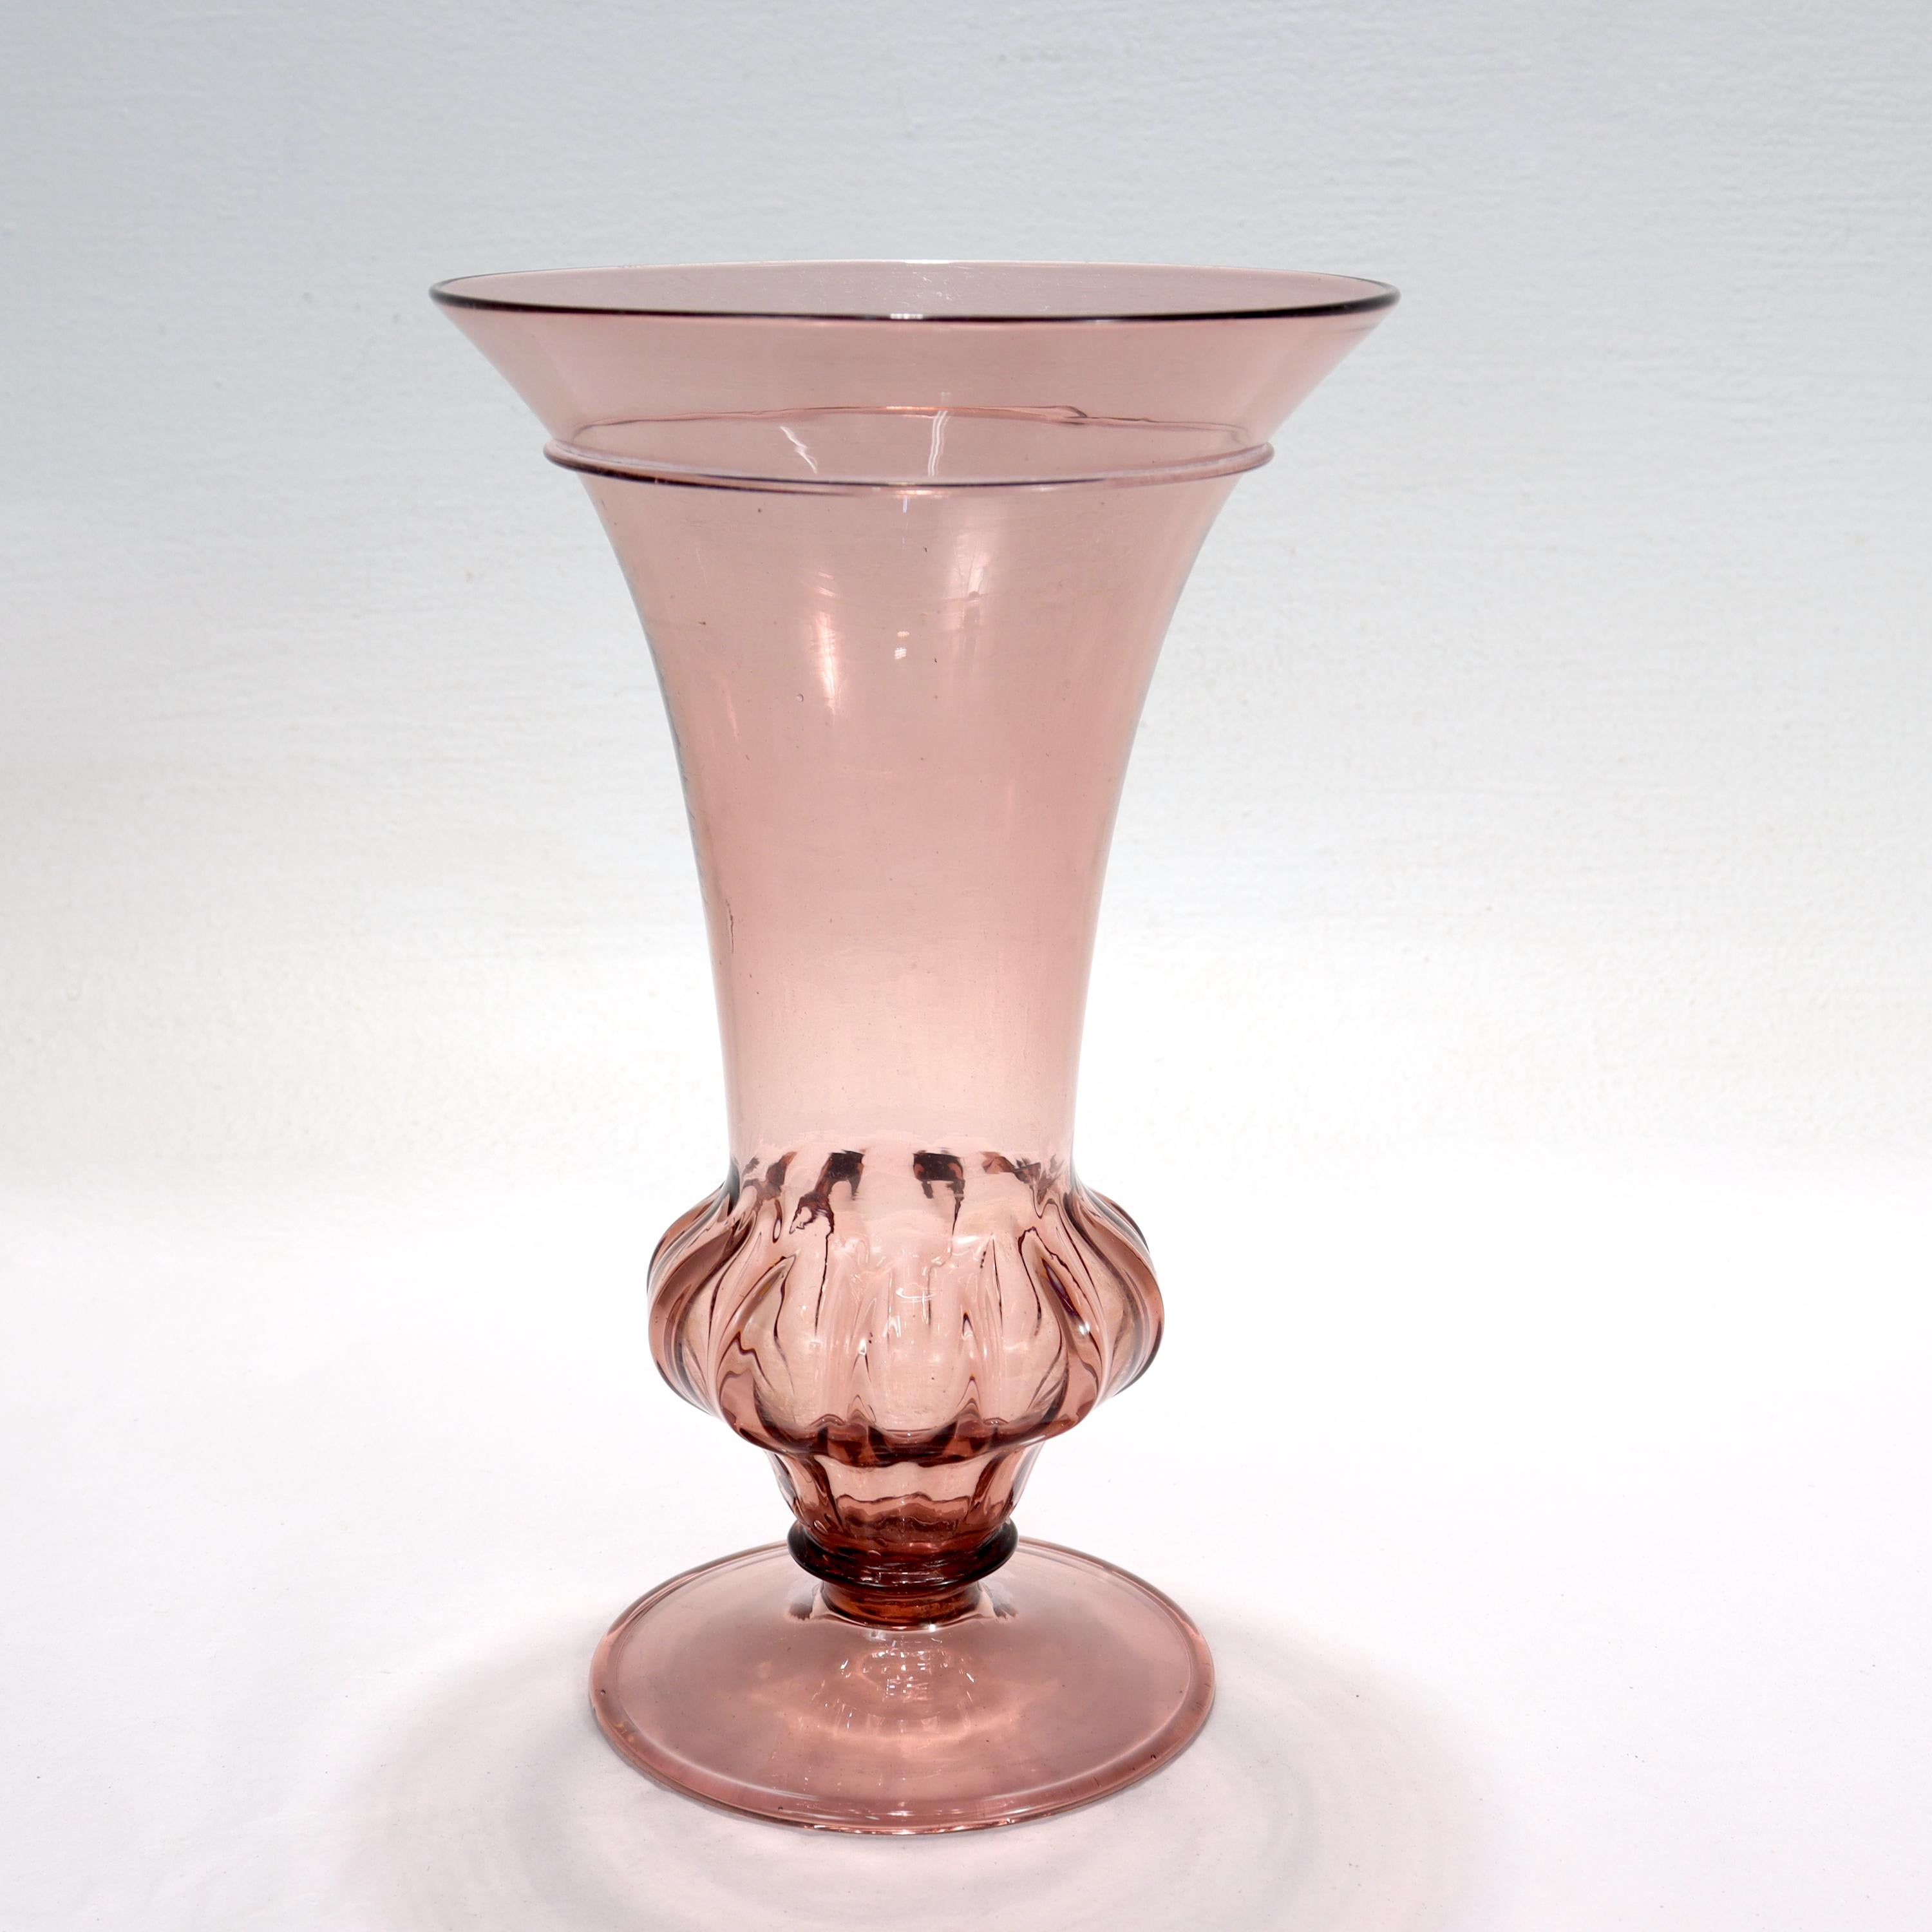 Eine feine violette venezianische oder Murano Glasvase.

Mit einem trompetenförmigen Aufsatz über einem unterdrückten, gerippten Knauf an der Basis, der von einem Scheibenfuß getragen wird. 

Grober Abdruck auf der Unterseite.

Einfach ein